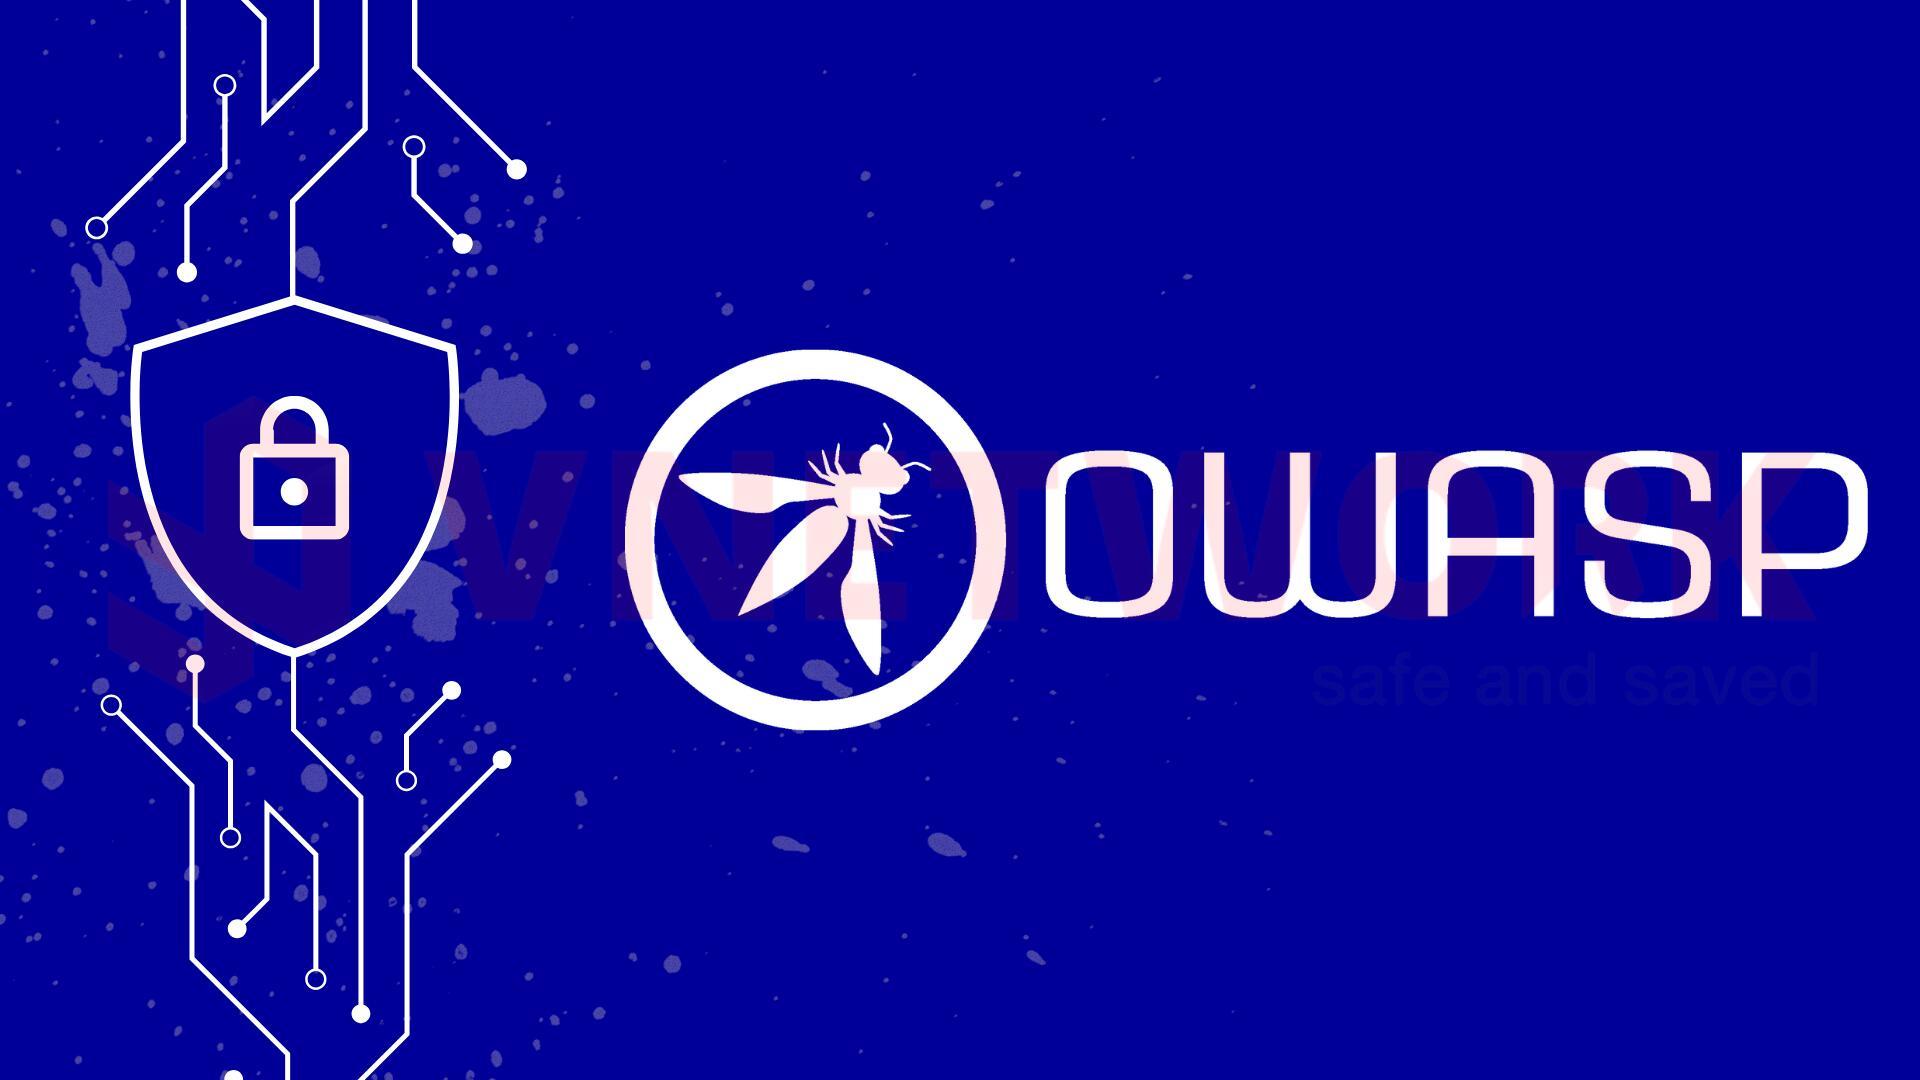 OWASP và cách ngăn chặn top 10 lỗ hổng OWASP hiện nay